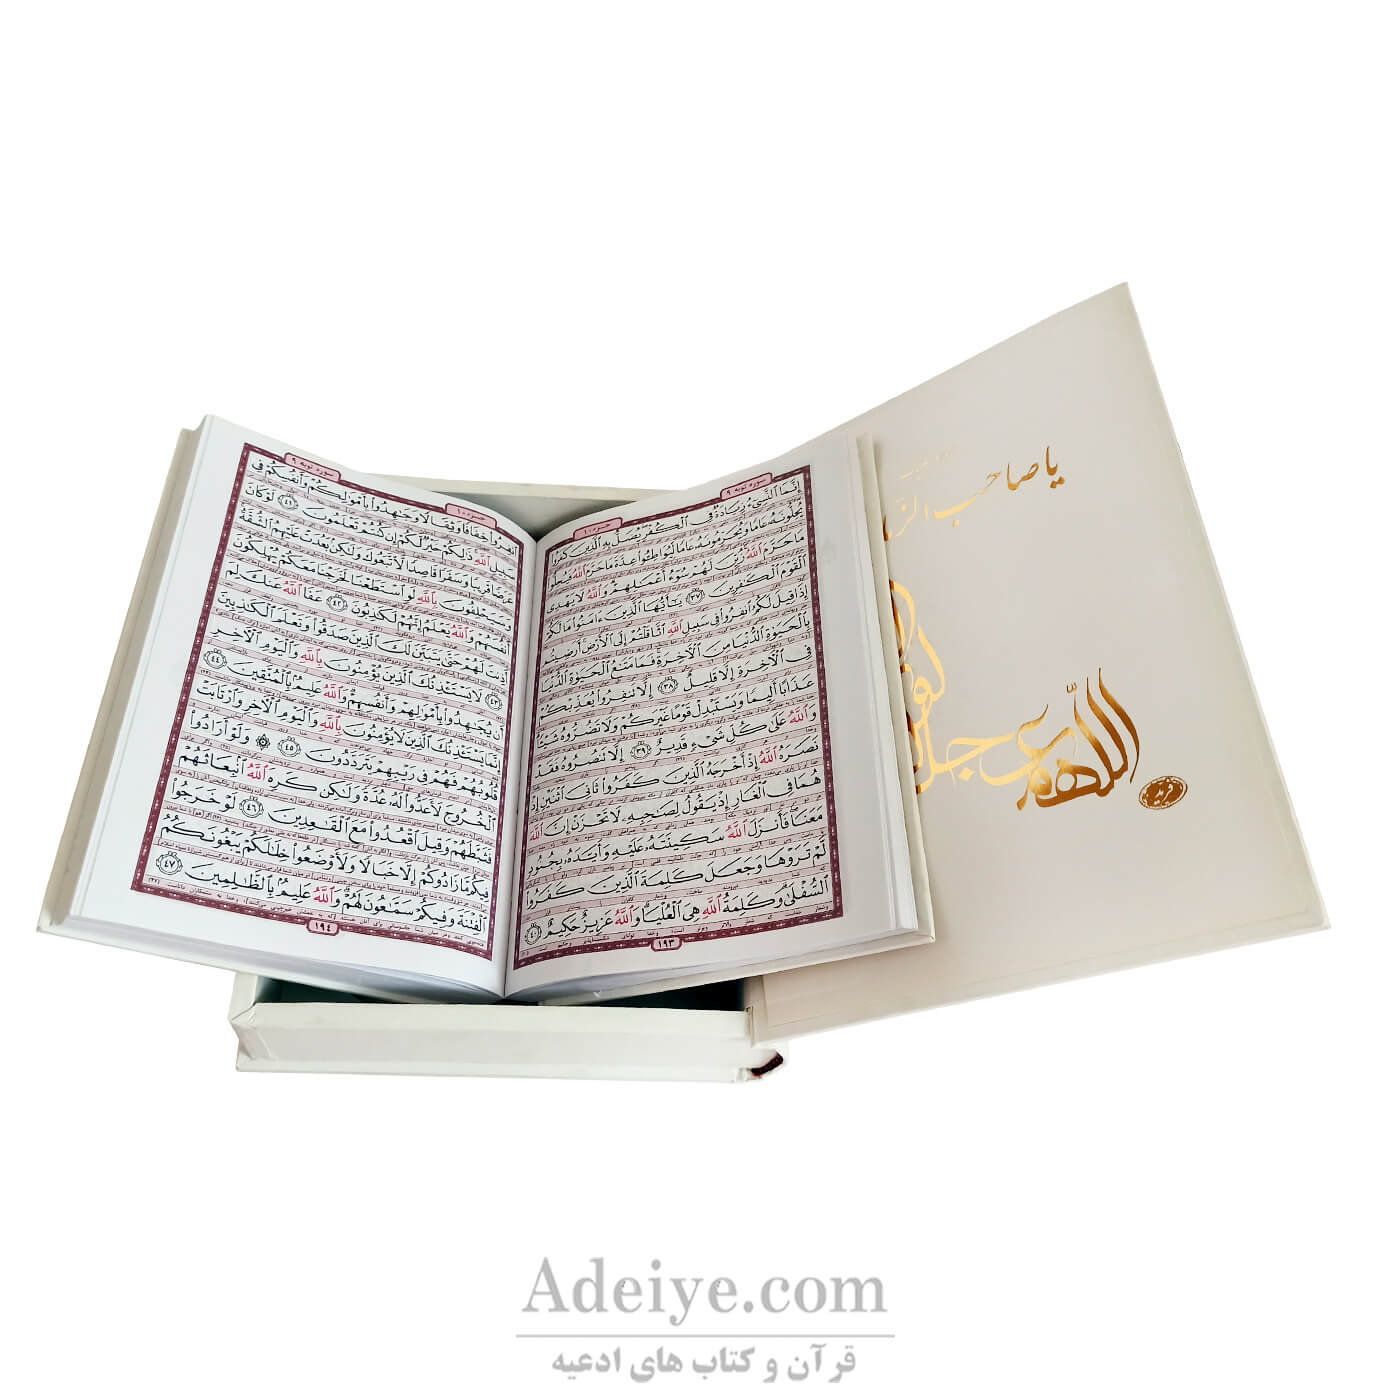 قرآن عثمان طه قابدار جعبه ای برجسته سلفون سخت مولتی دار طلاکوب صفحات کتاب